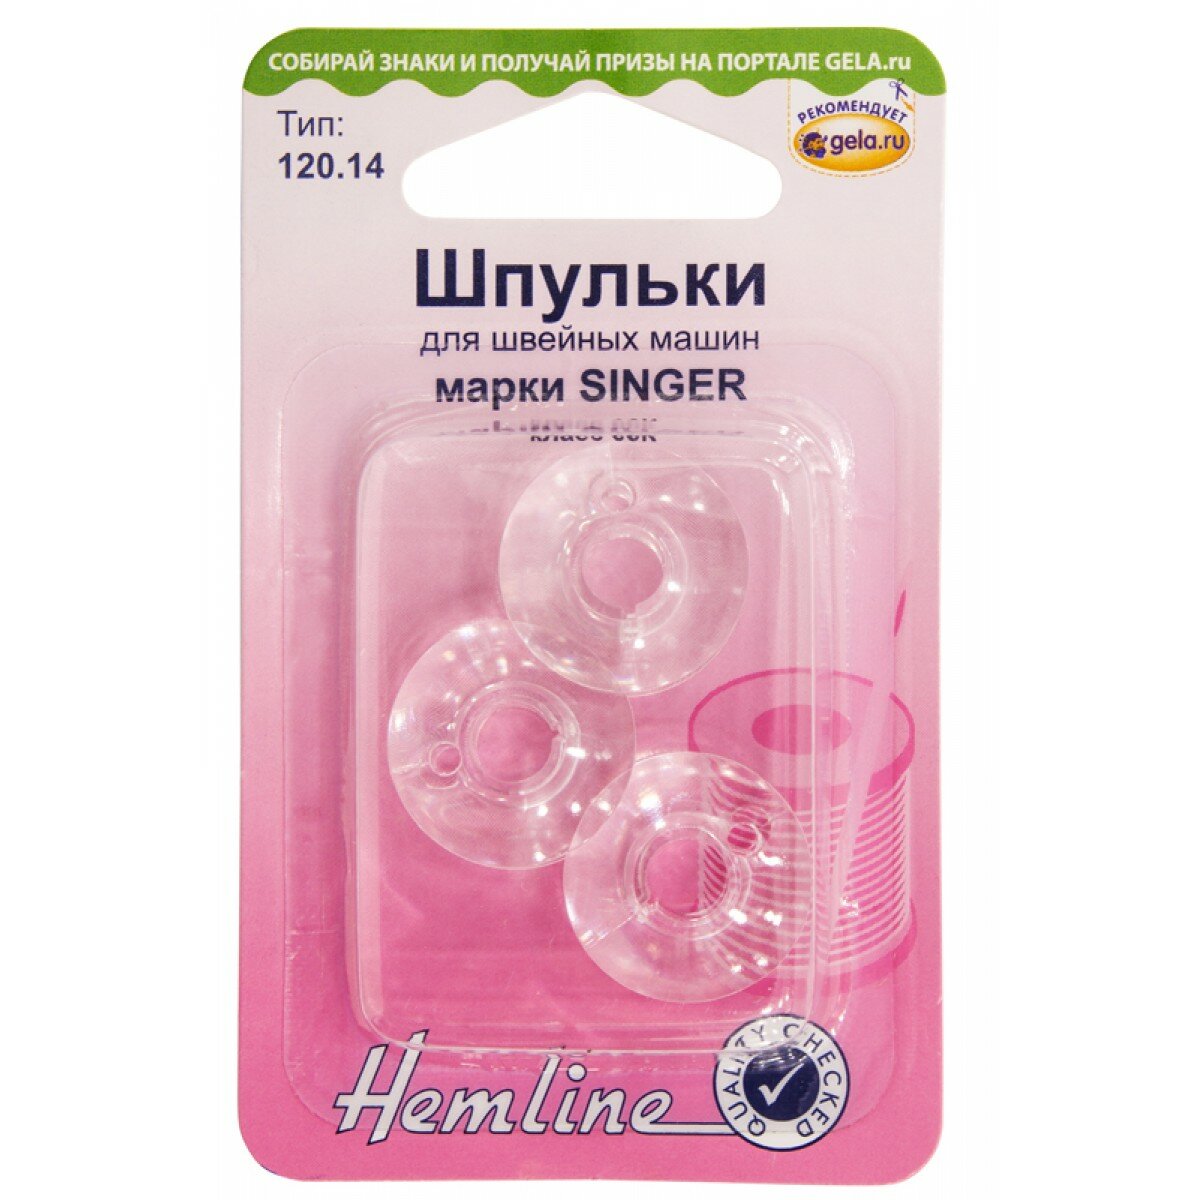 Шпульки для швейных машин пластиковые марки SINGER, класс 66К HEMLINE 120.14